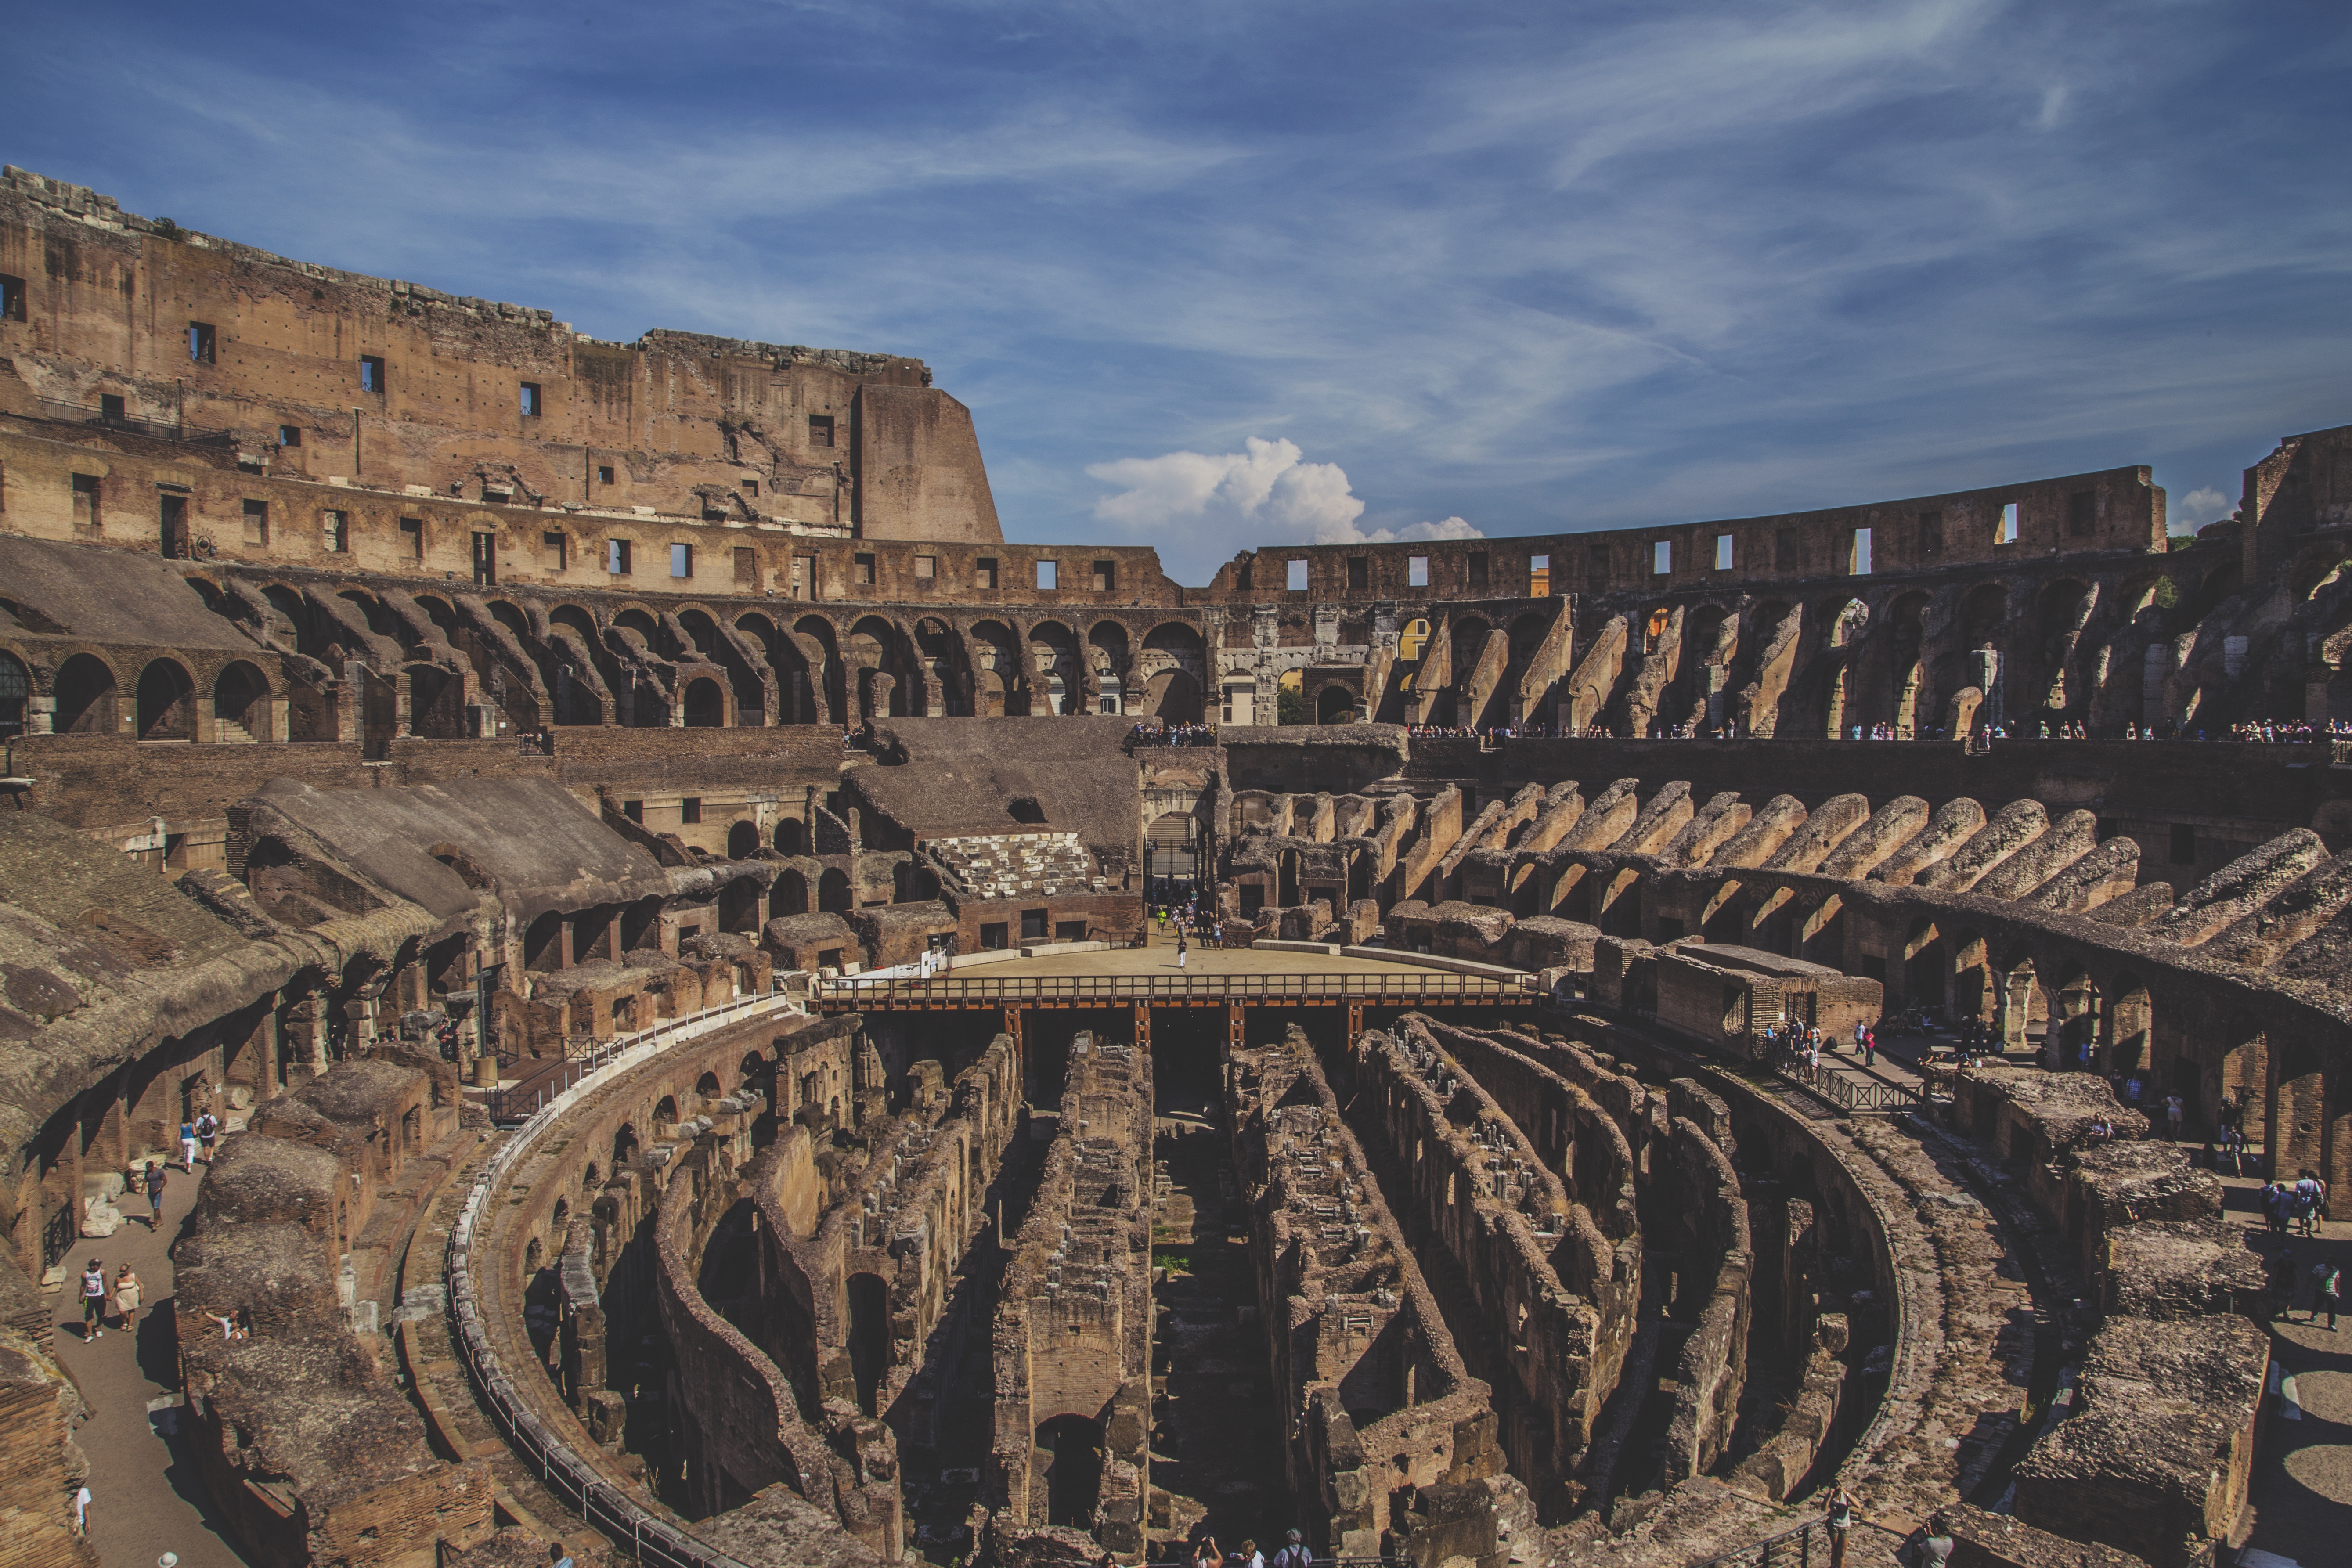 Inside the Colosseum.